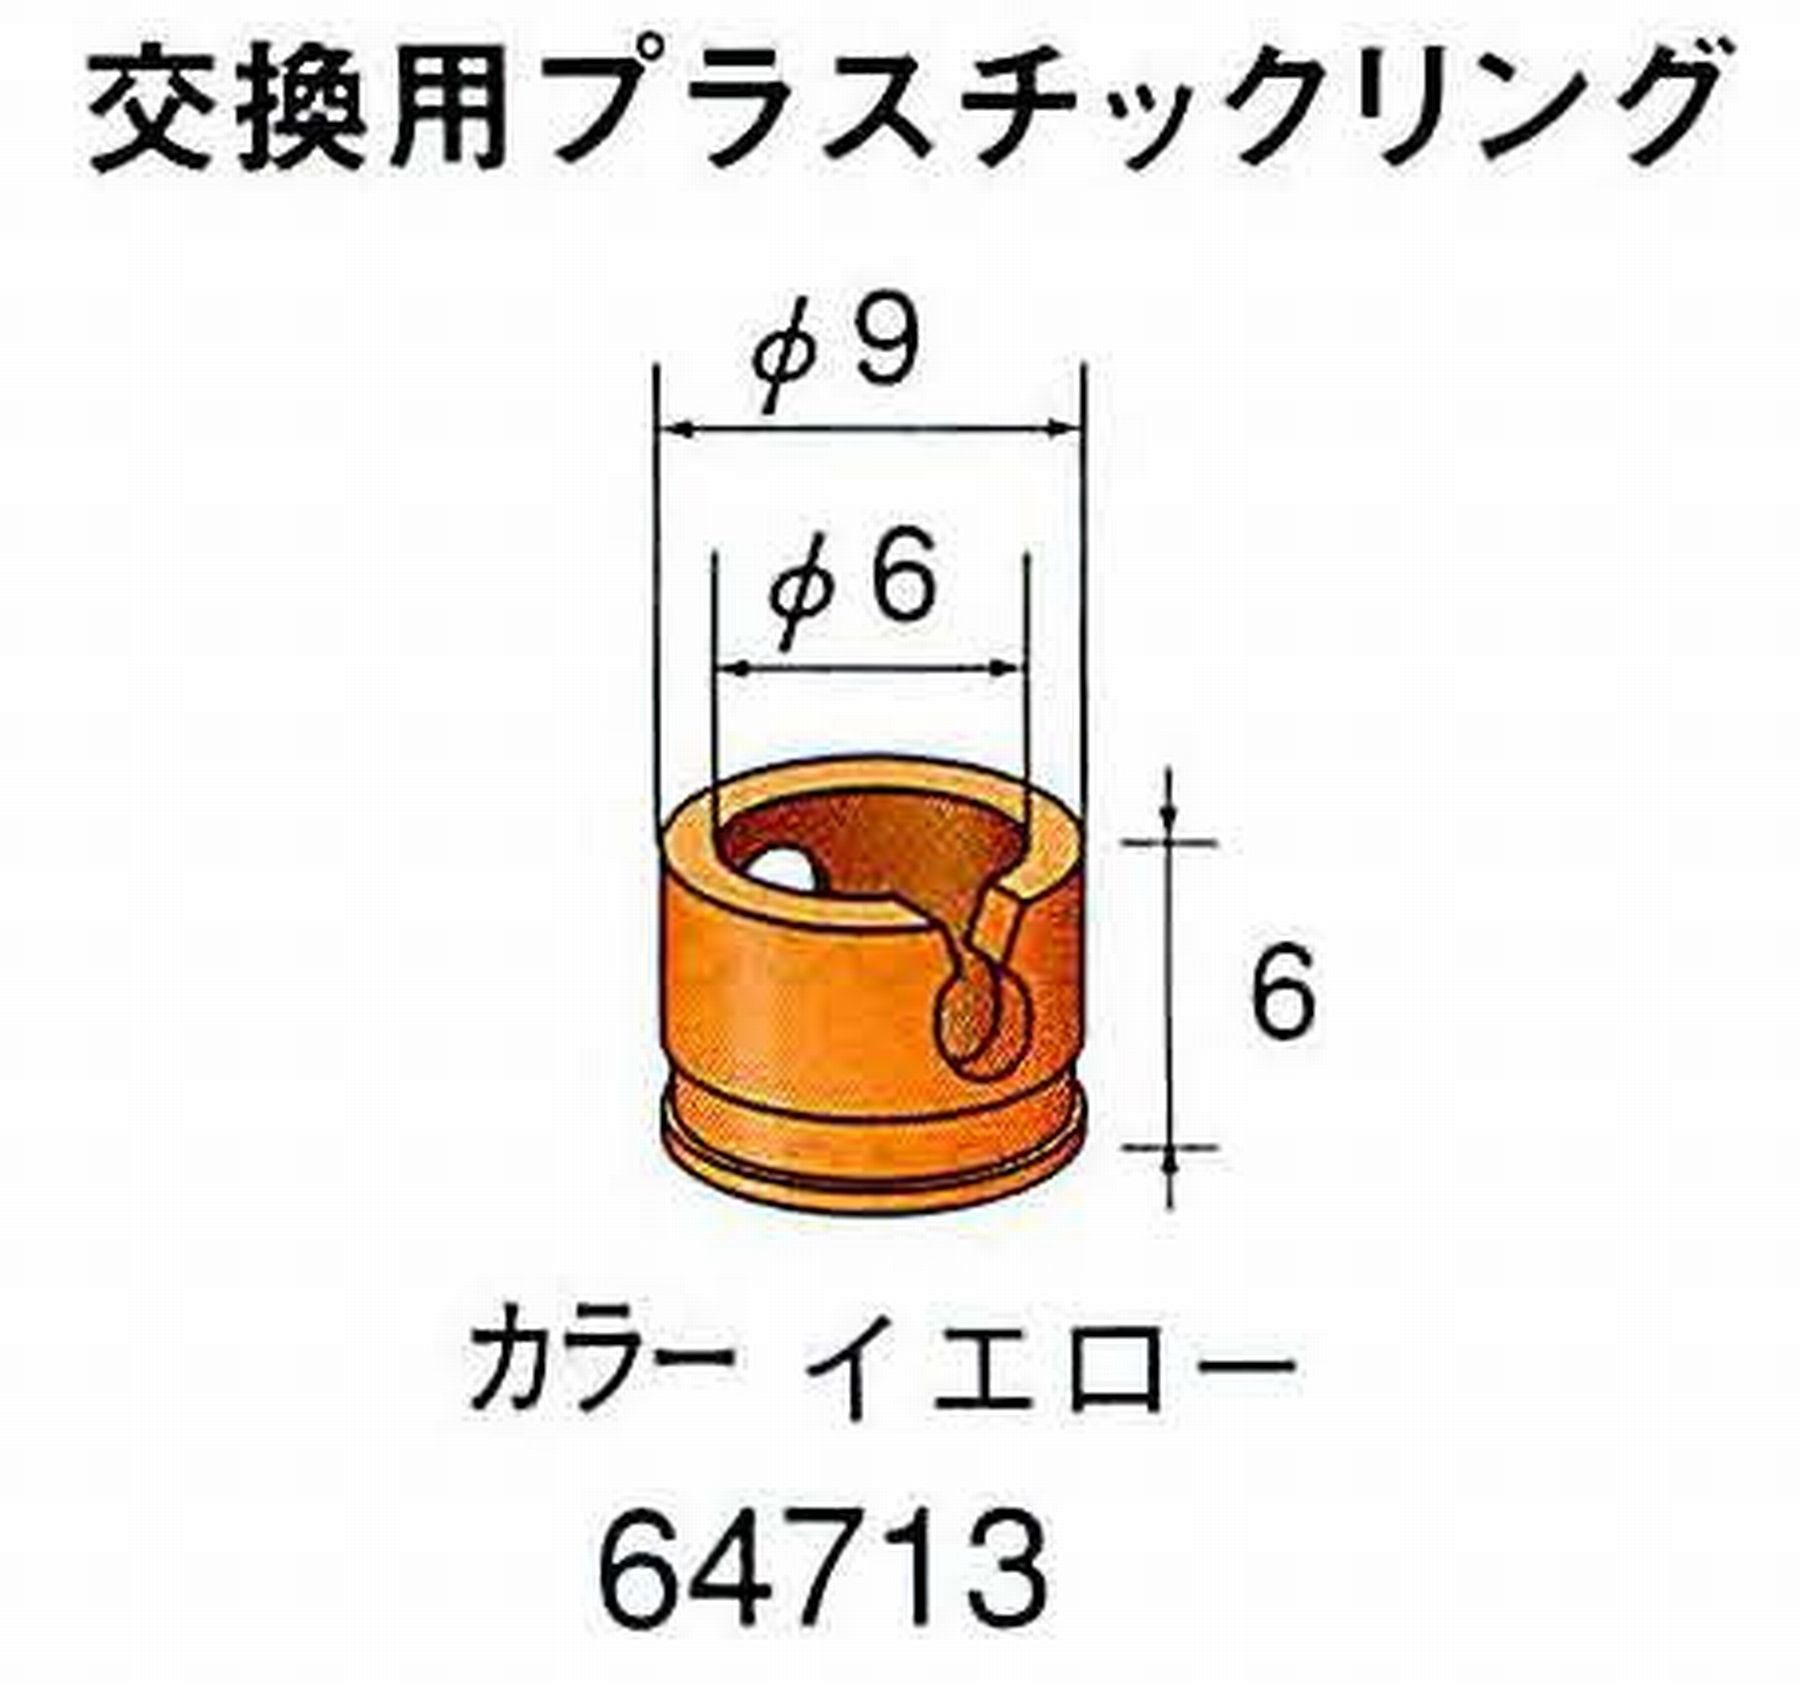 ナカニシ/NAKANISHI アングルグラインダ(電動・エアー) アングルアタッチメント専用工具 ラップリング(交換用プラスチックリング) 64713